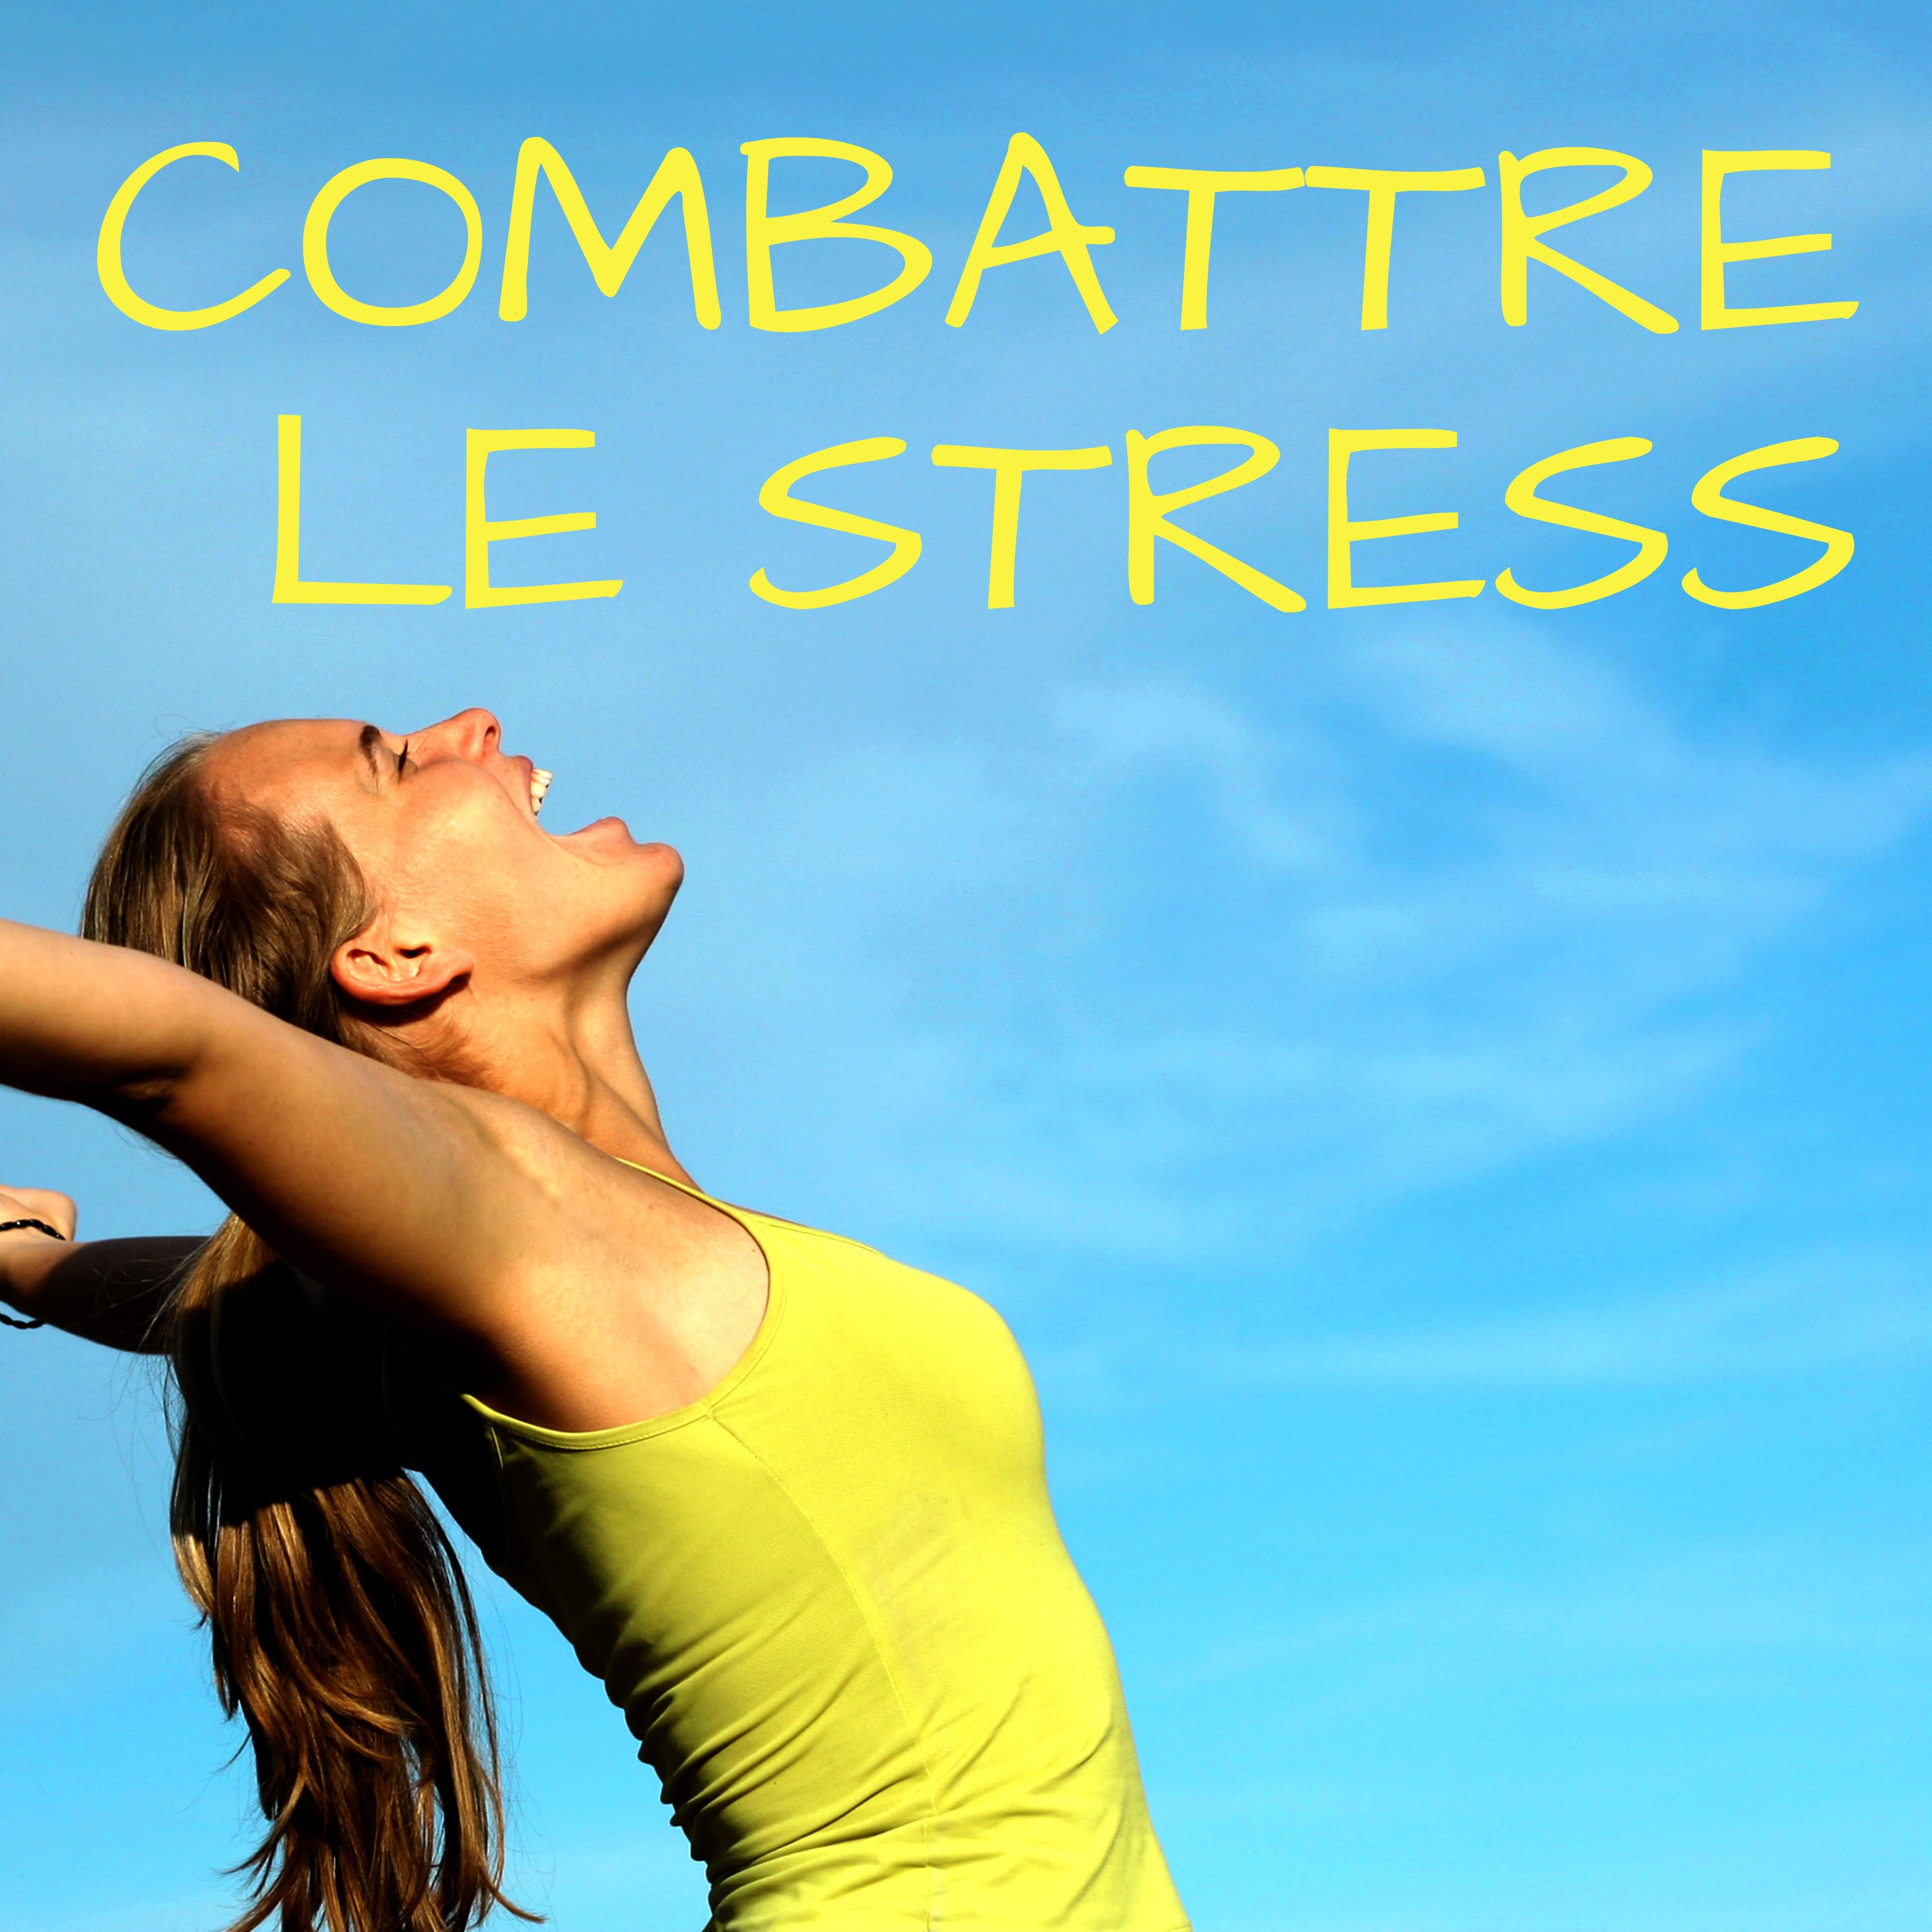 Combattre le Stress – Musique Méditation, Relaxation, Massage, Détente et Bien-être, Musique Anti Stress pour Apaiser votre Âme